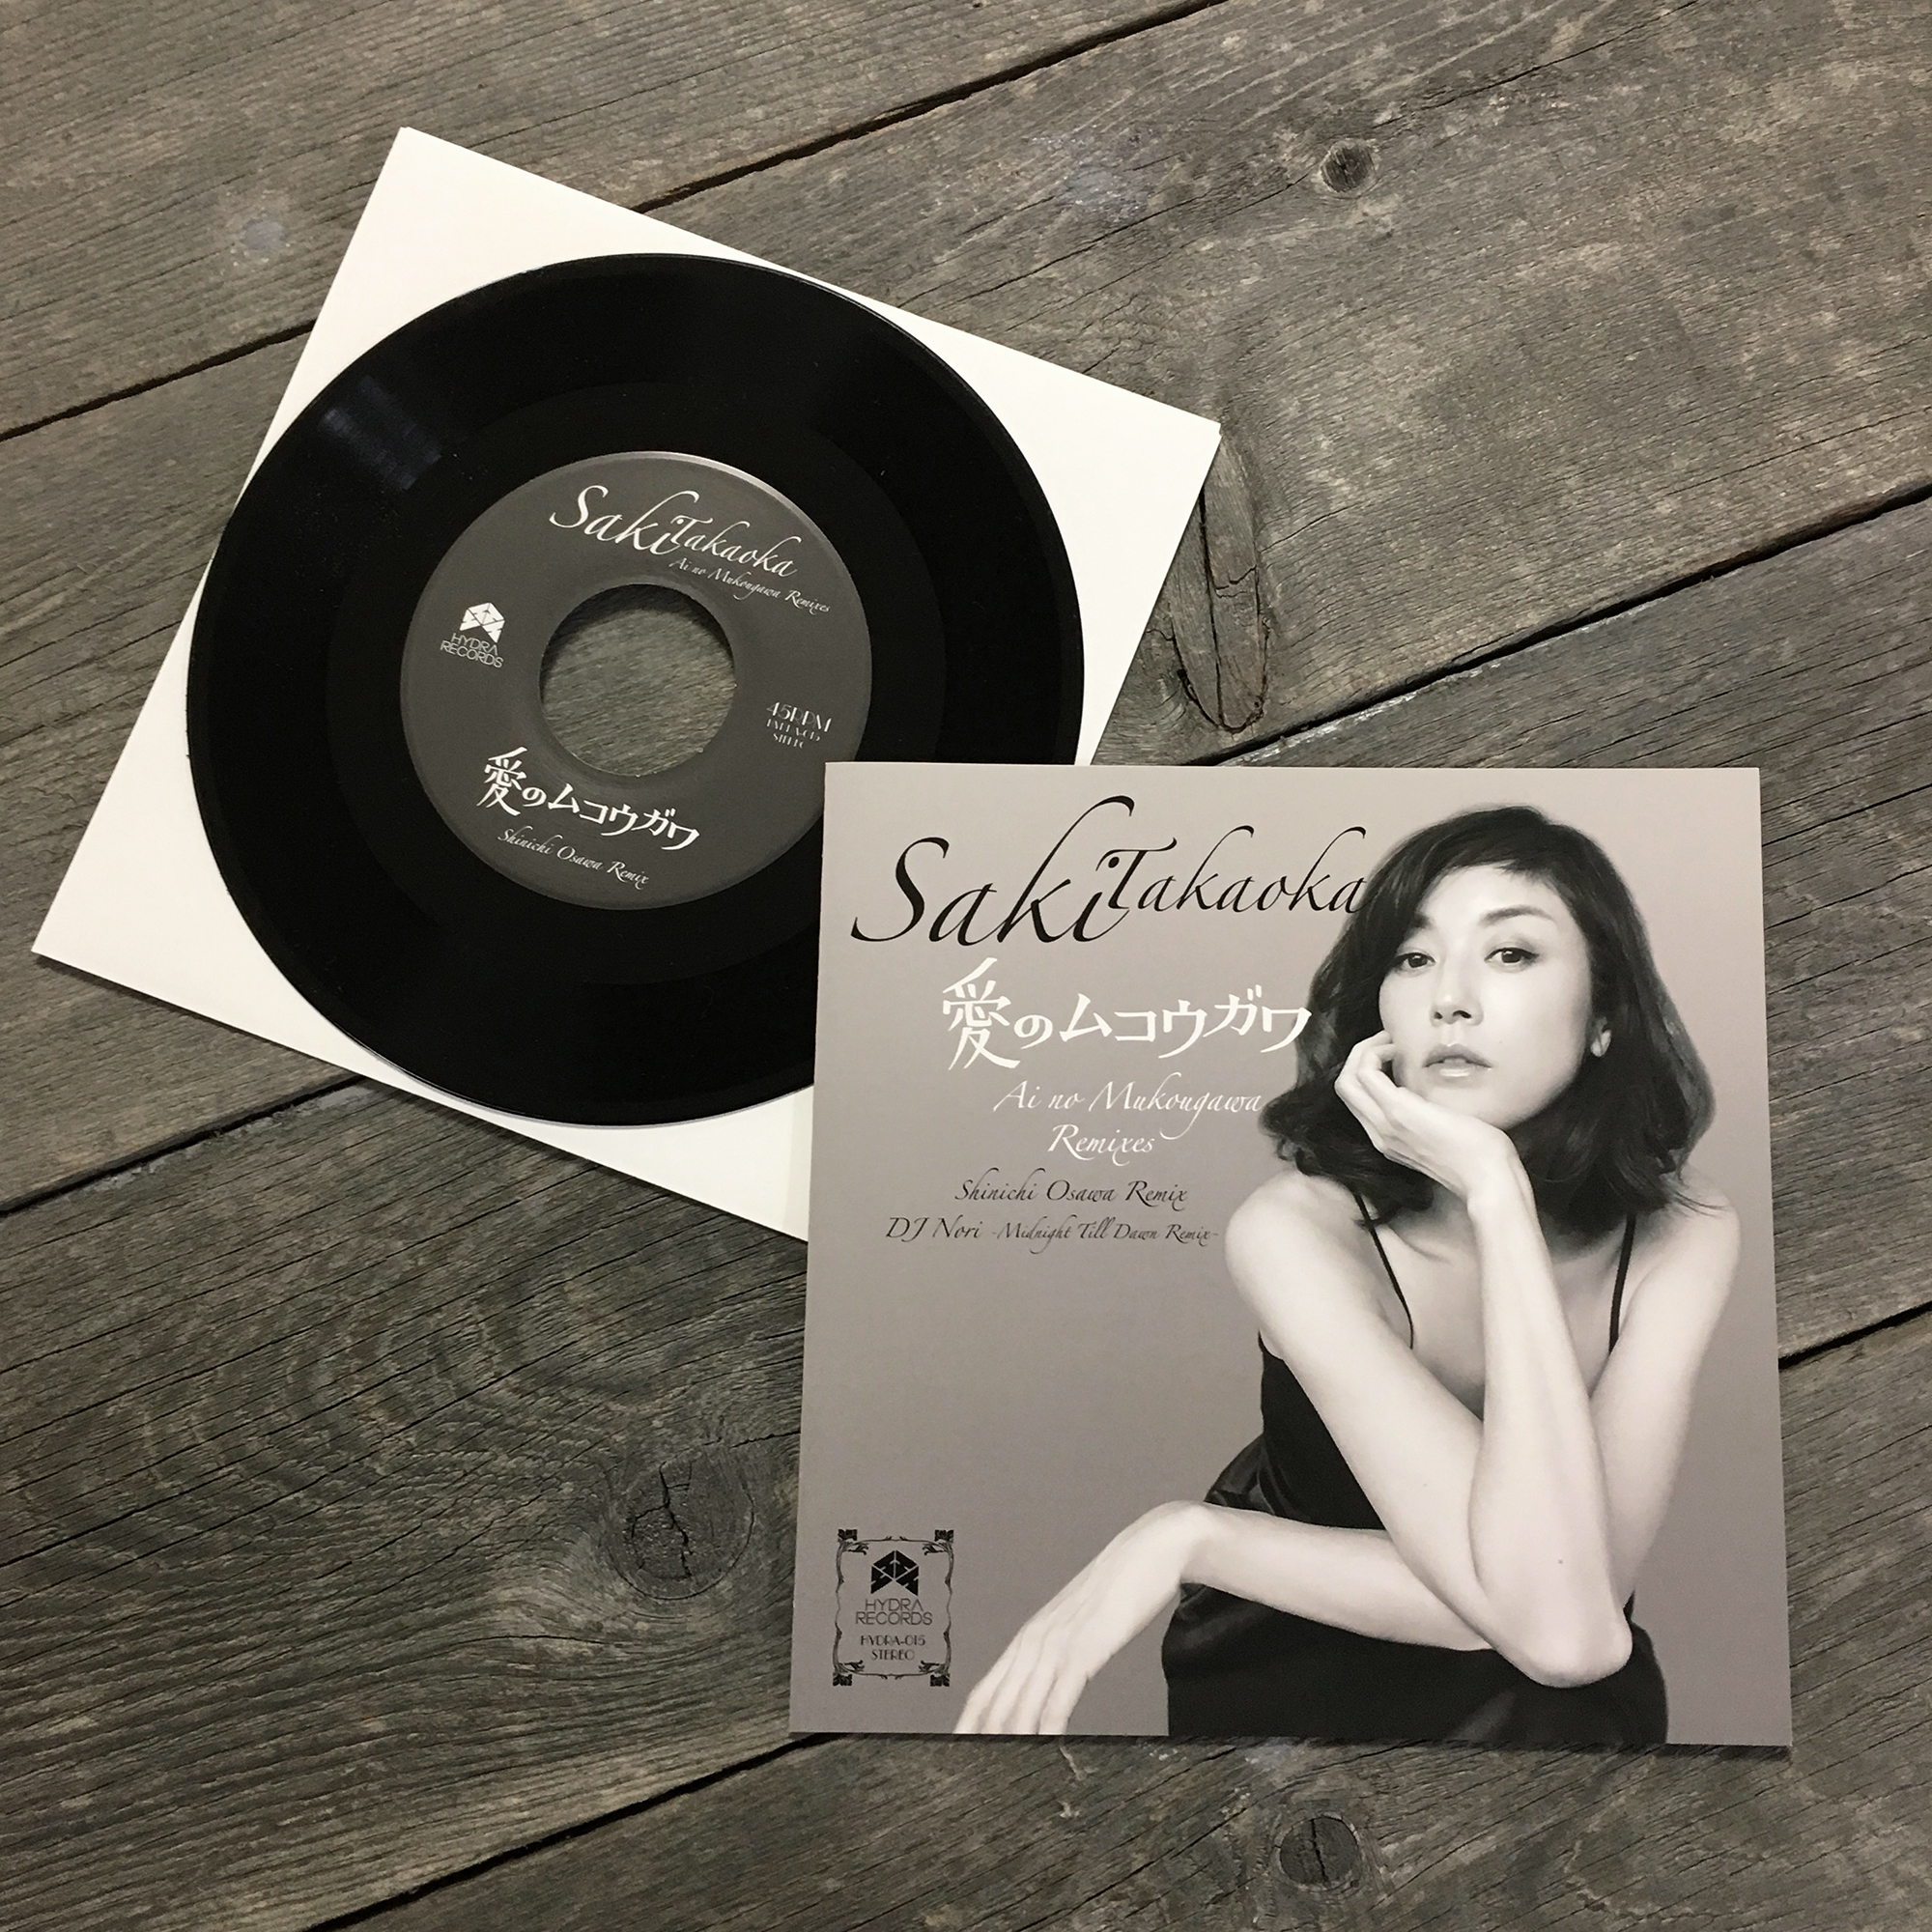 Saki Takaoka “Ai no Mukougawa Remixes”